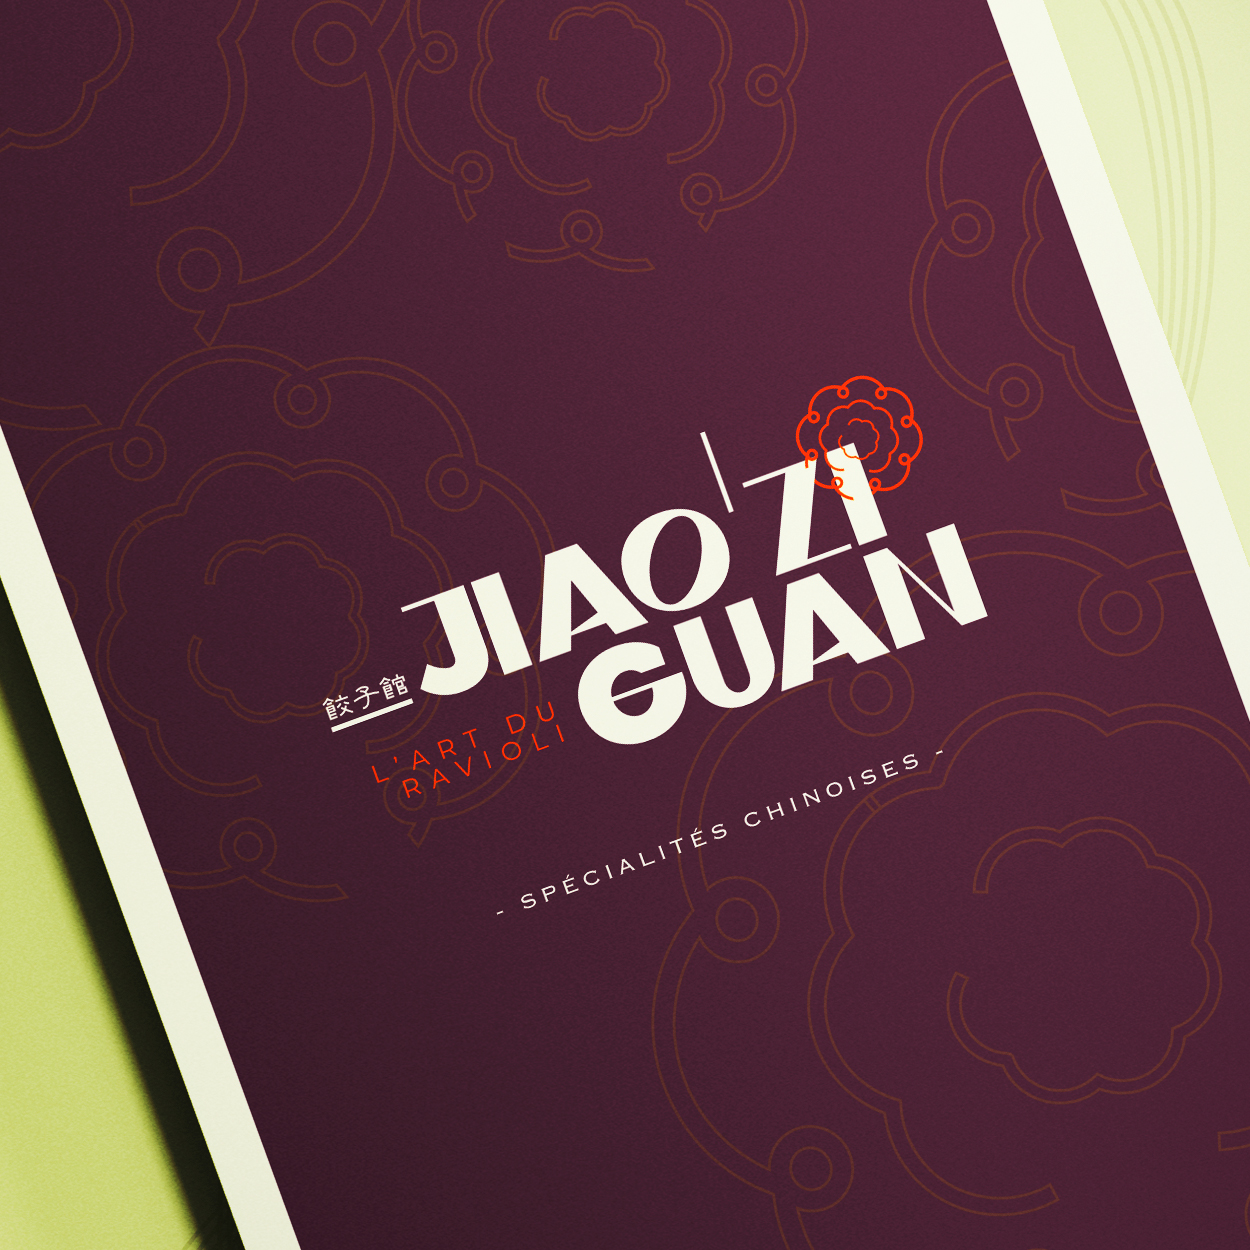 Création de menu restaurant Jiao Zi Guan